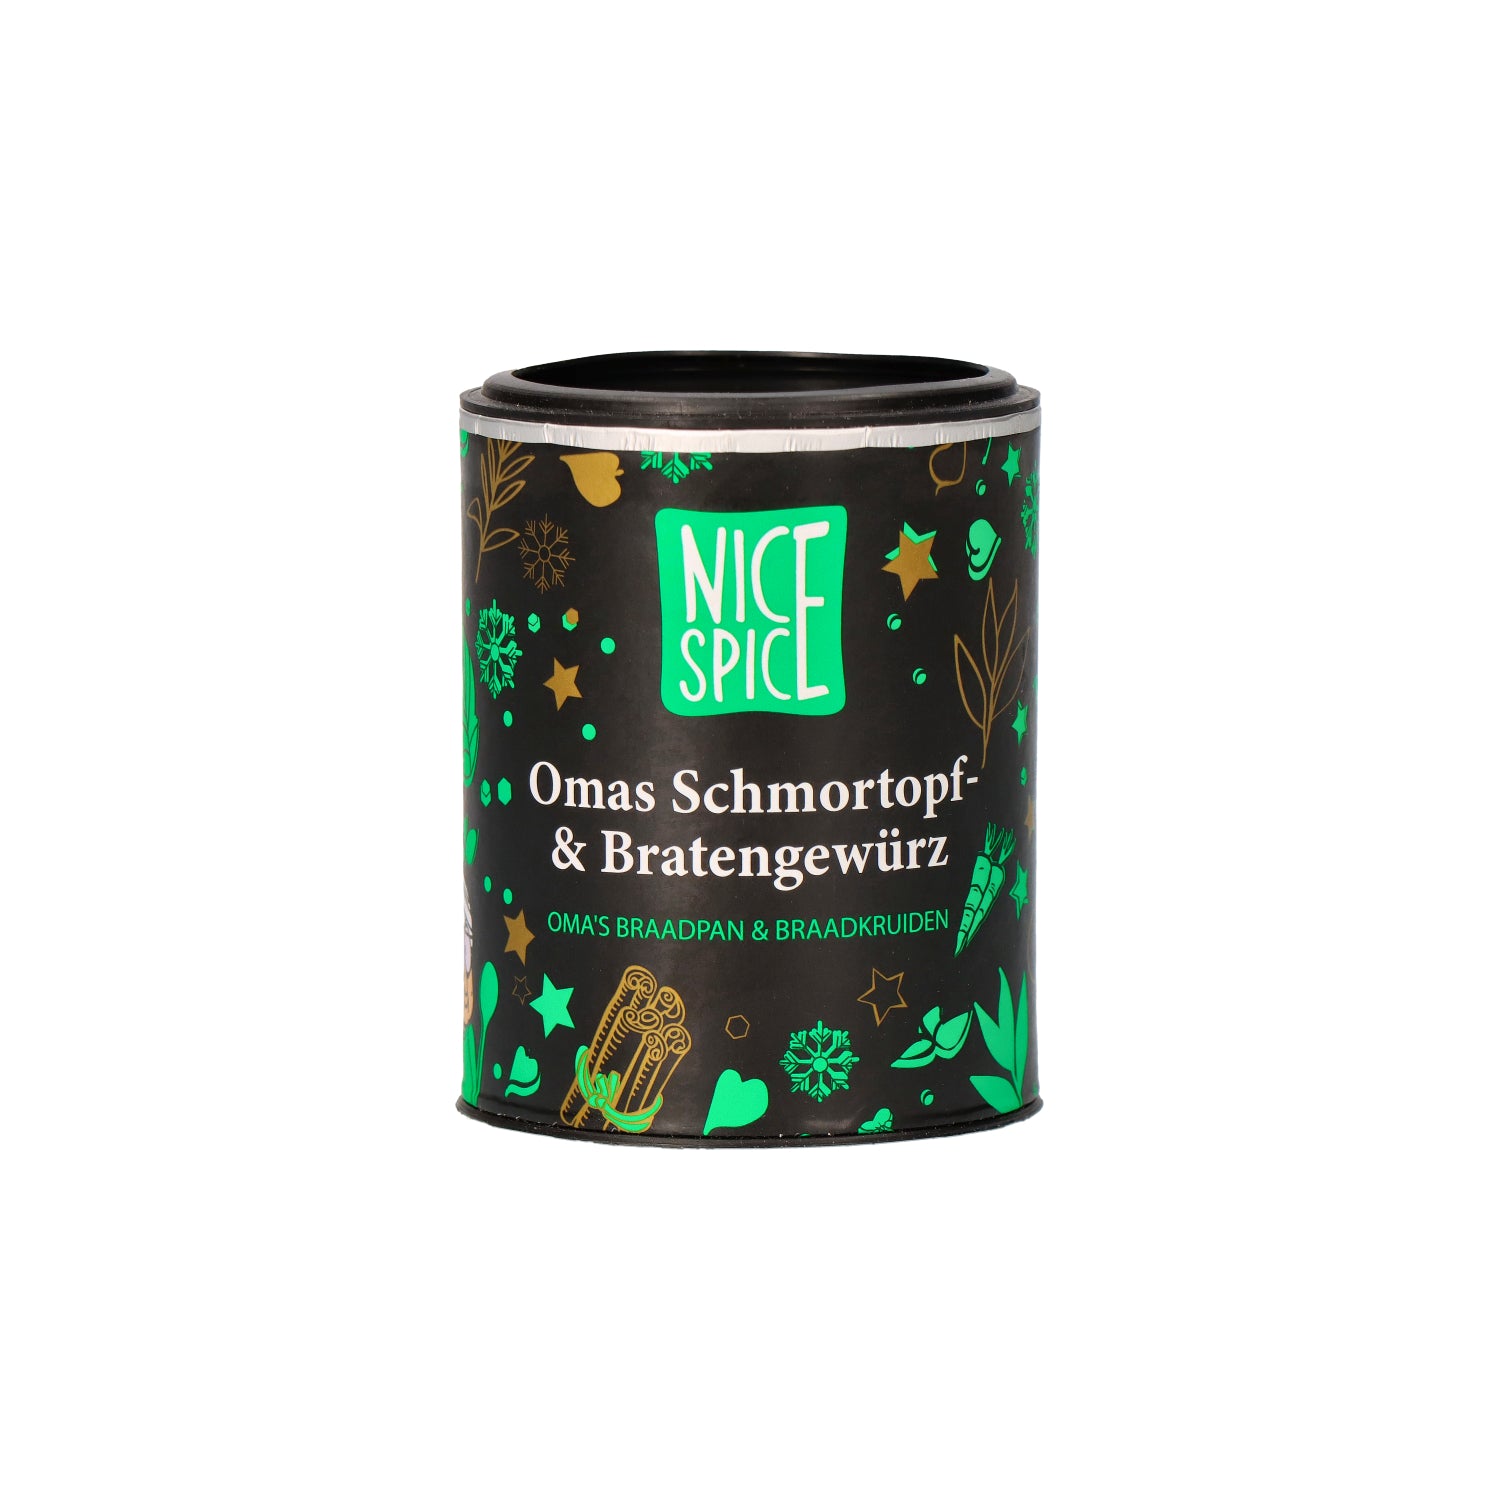 NICE SPICE Omas Schmortopf und Bratengewürz in schwarzgrüner zylinderförmiger Dose in verspieltem Design mit weißem Hintergrund